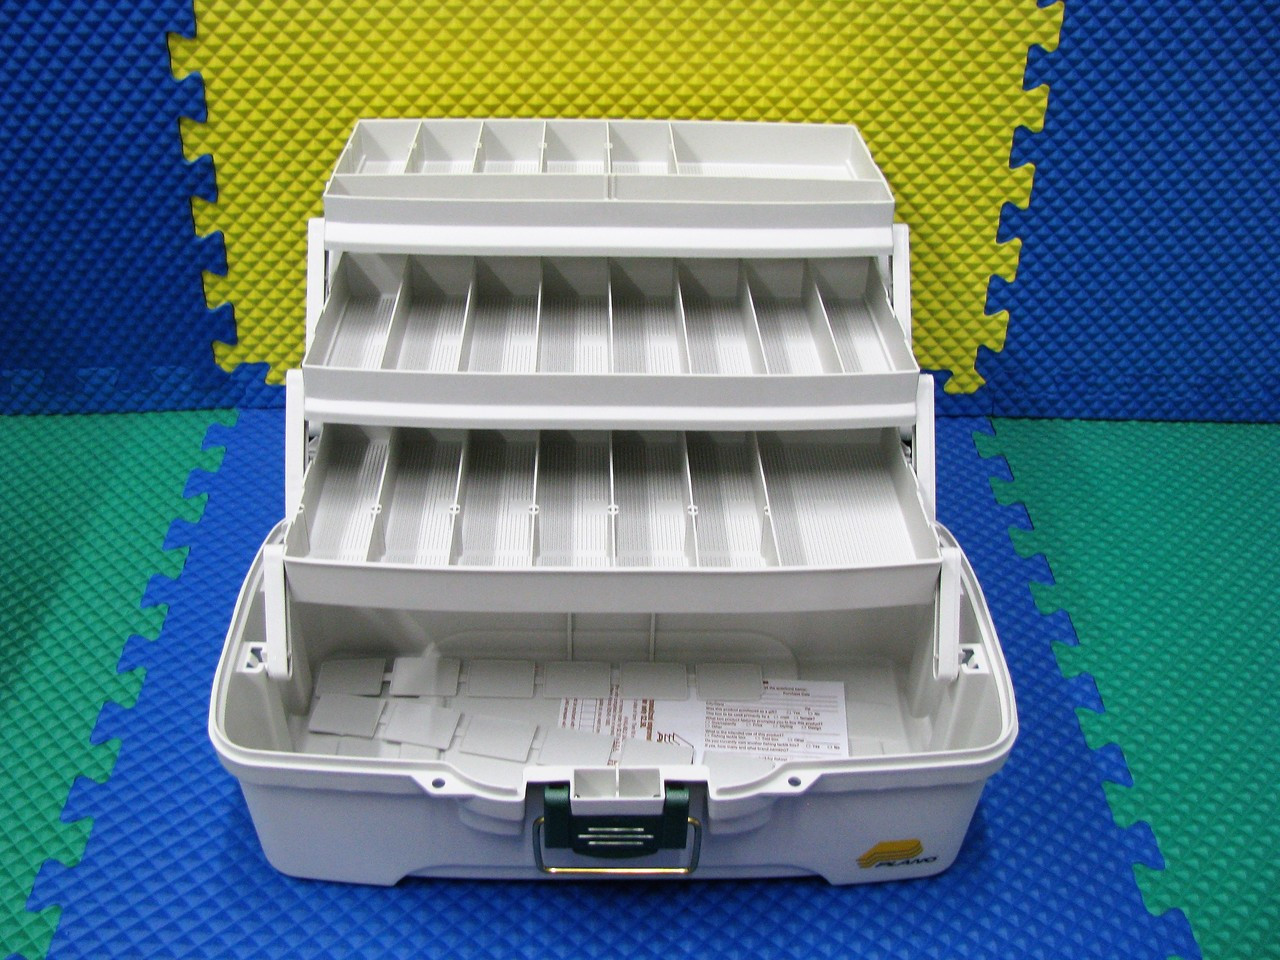 Plano Tackle Box-Two Tray Tackle Box